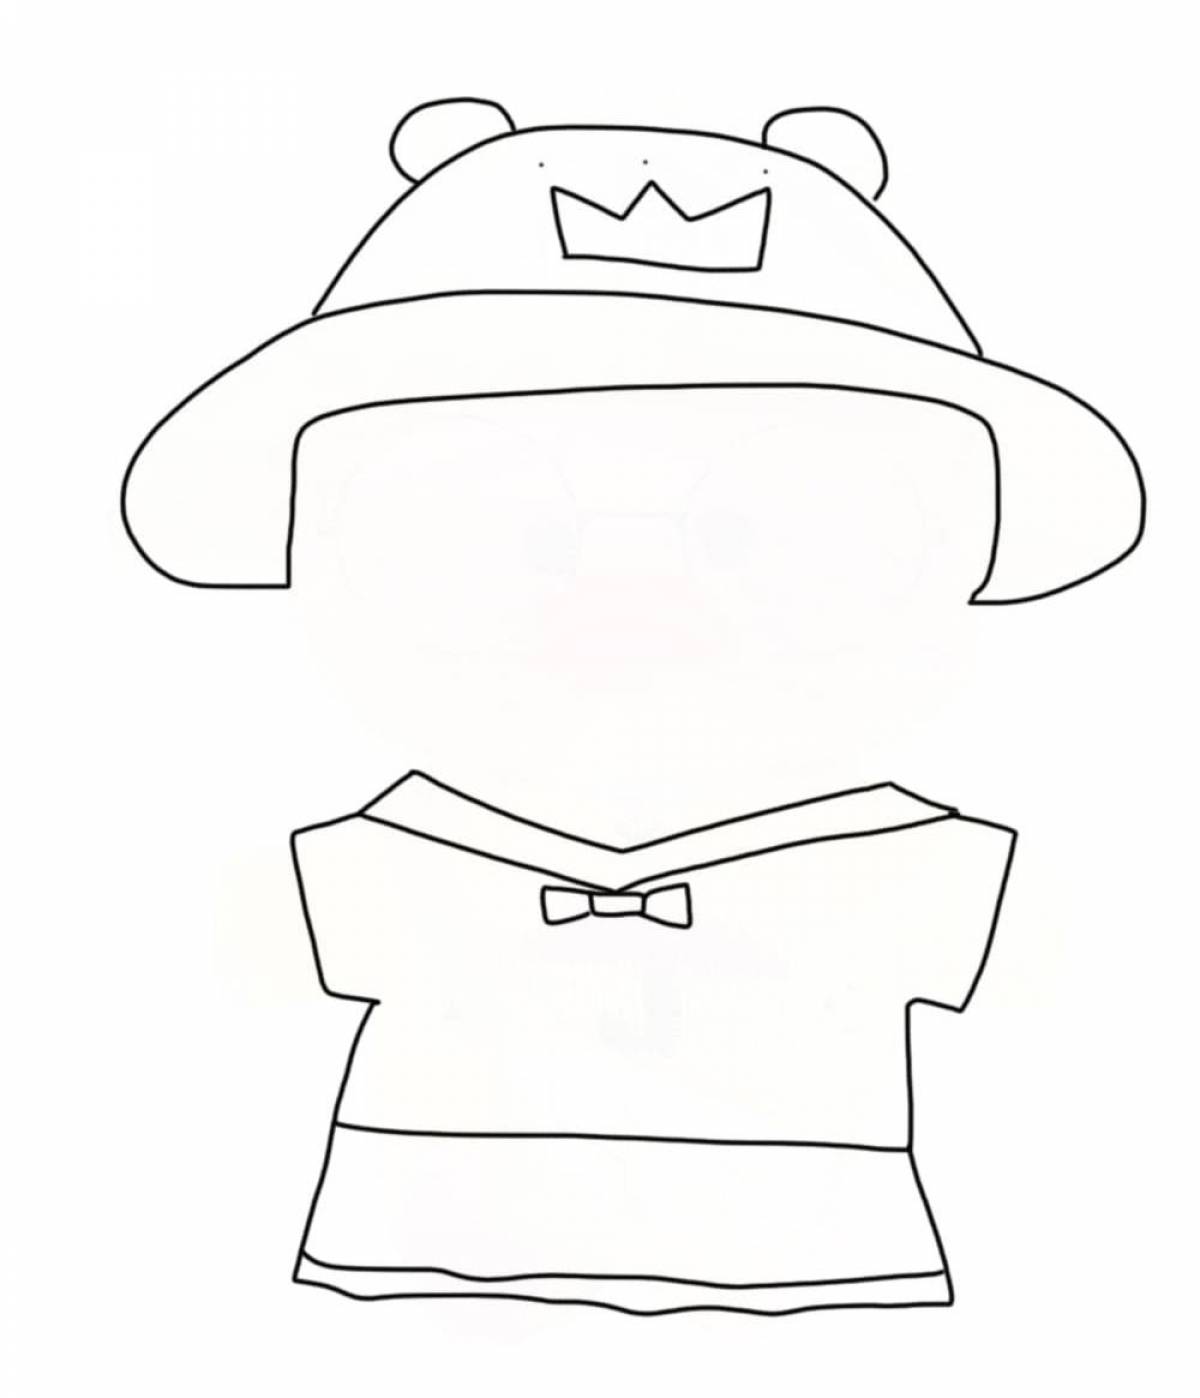 Анимированная утка лалафанфан с одеждой